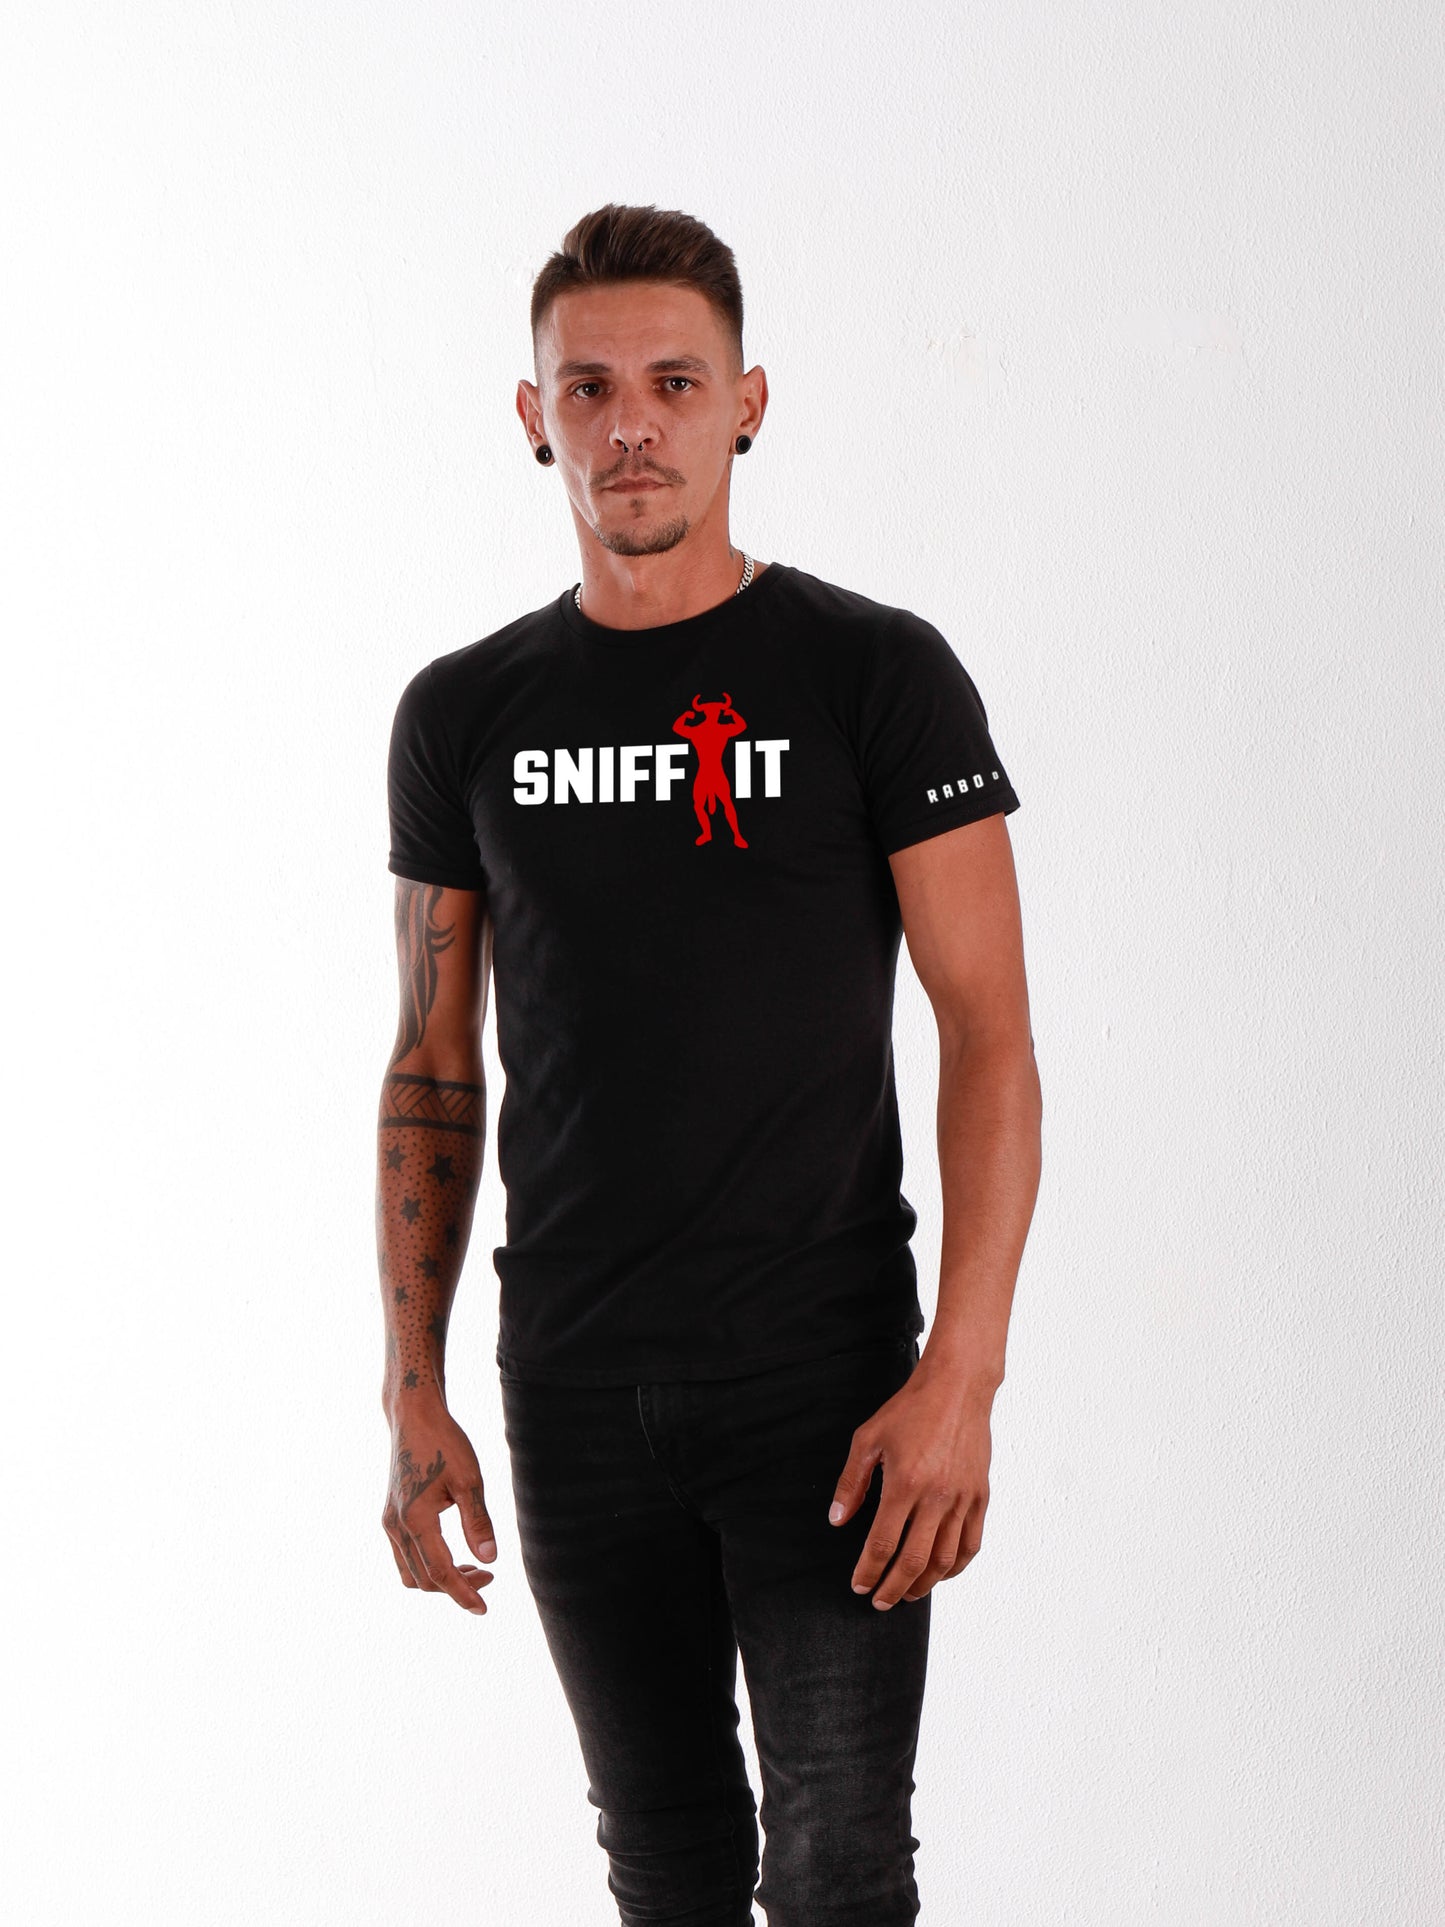 Camiseta SNIFF IT con diseño Minotaur Armpit Fetish